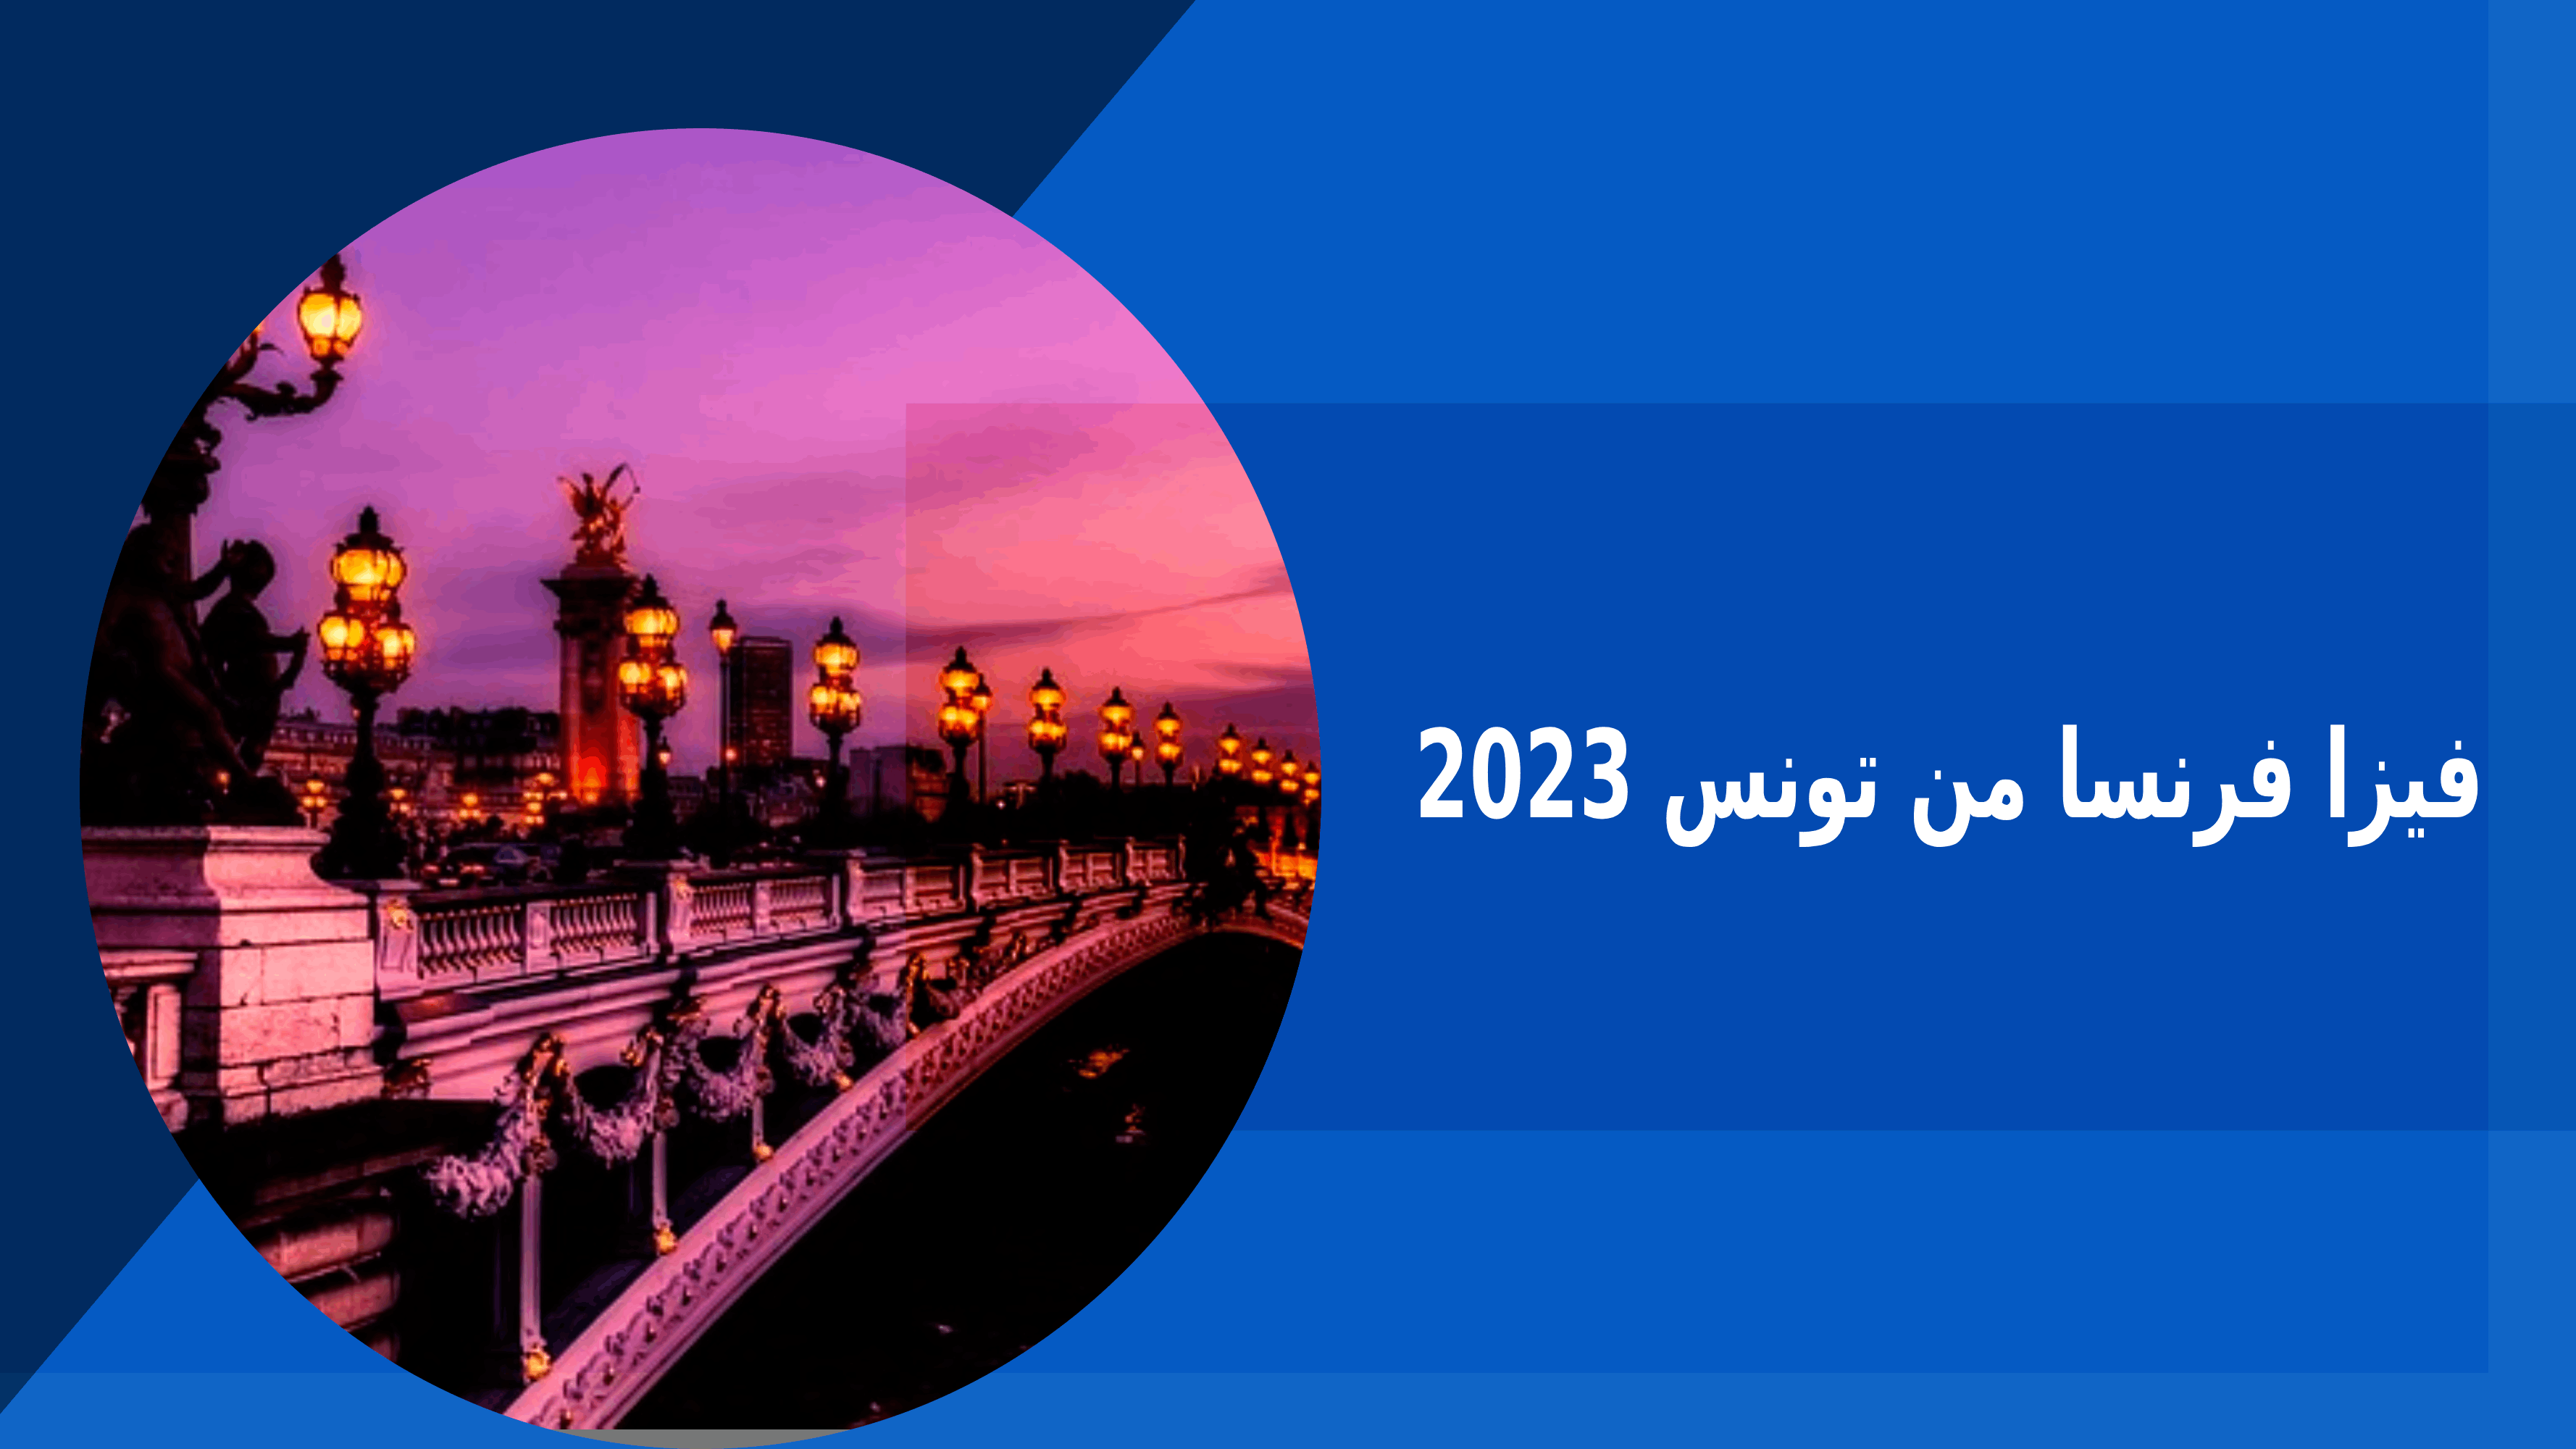 فيزا فرنسا من تونس 2023 – فكرة بوك